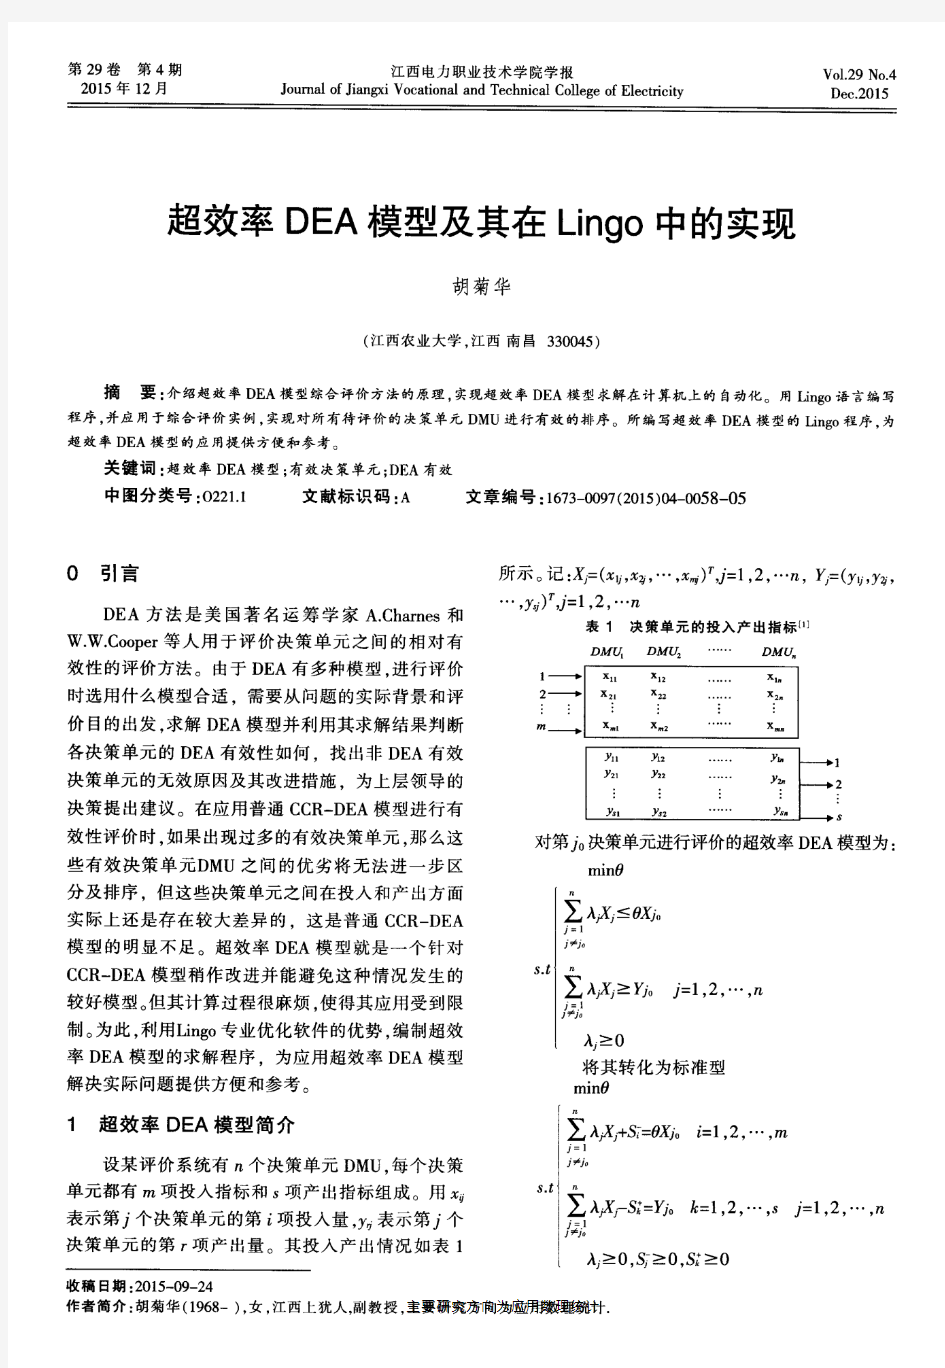 超效率DEA模型及其在Lingo中的实现